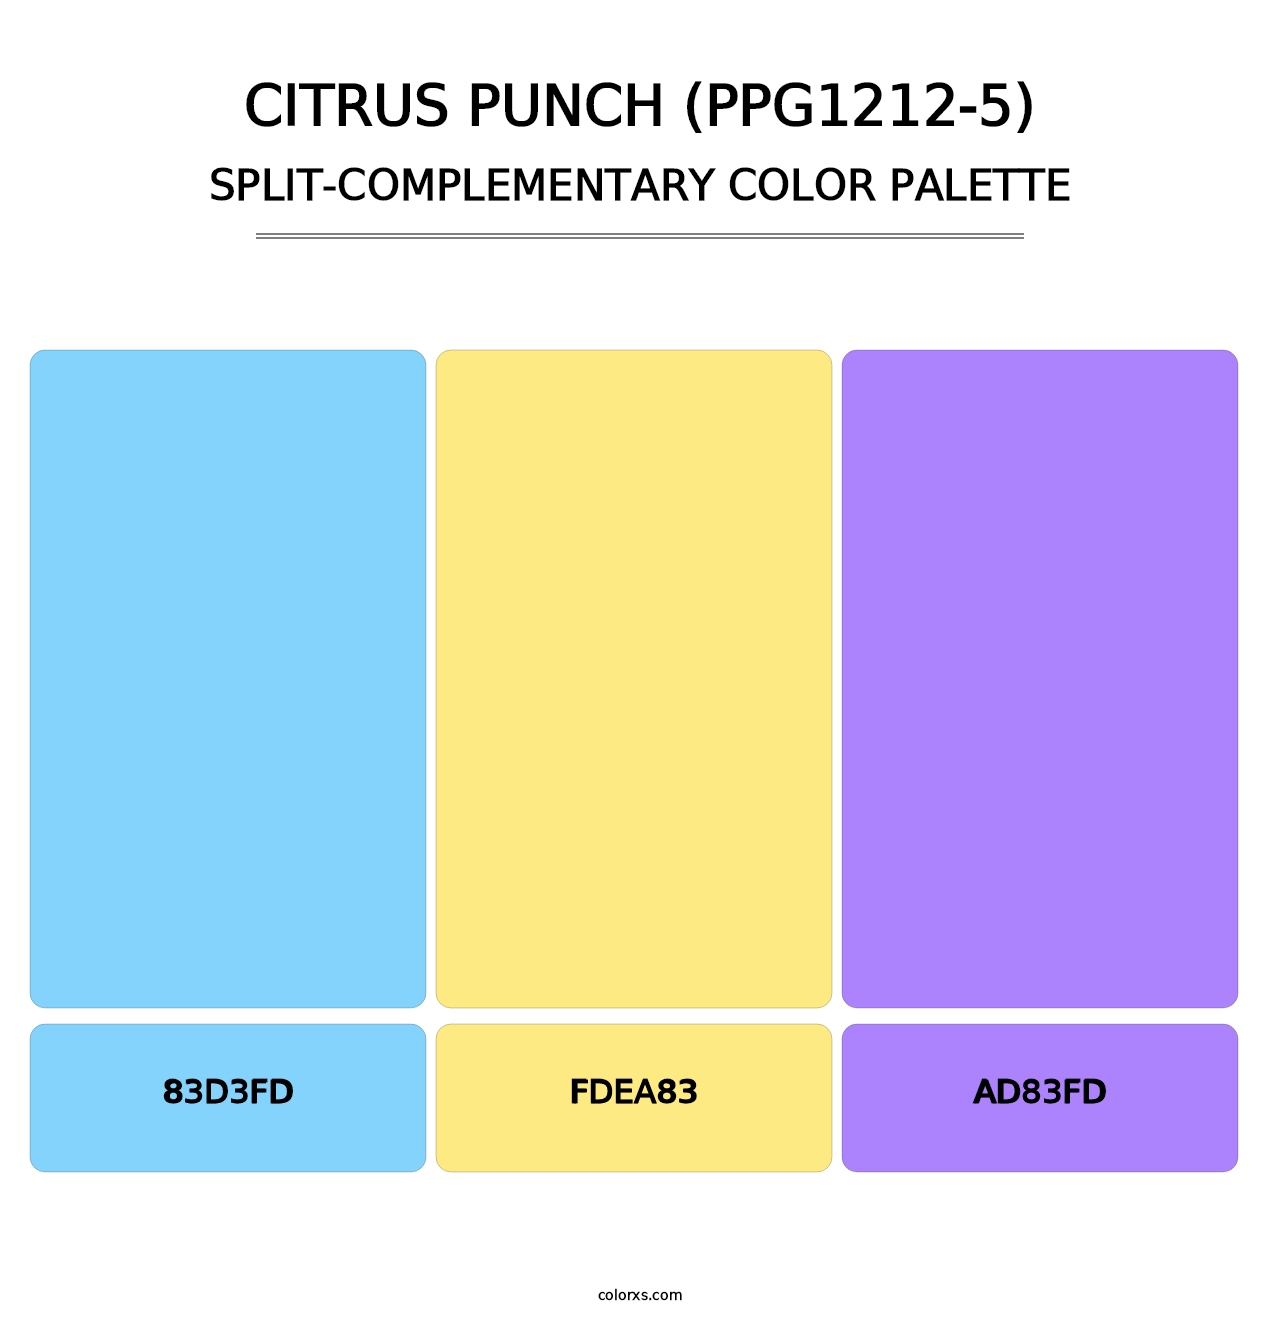 Citrus Punch (PPG1212-5) - Split-Complementary Color Palette